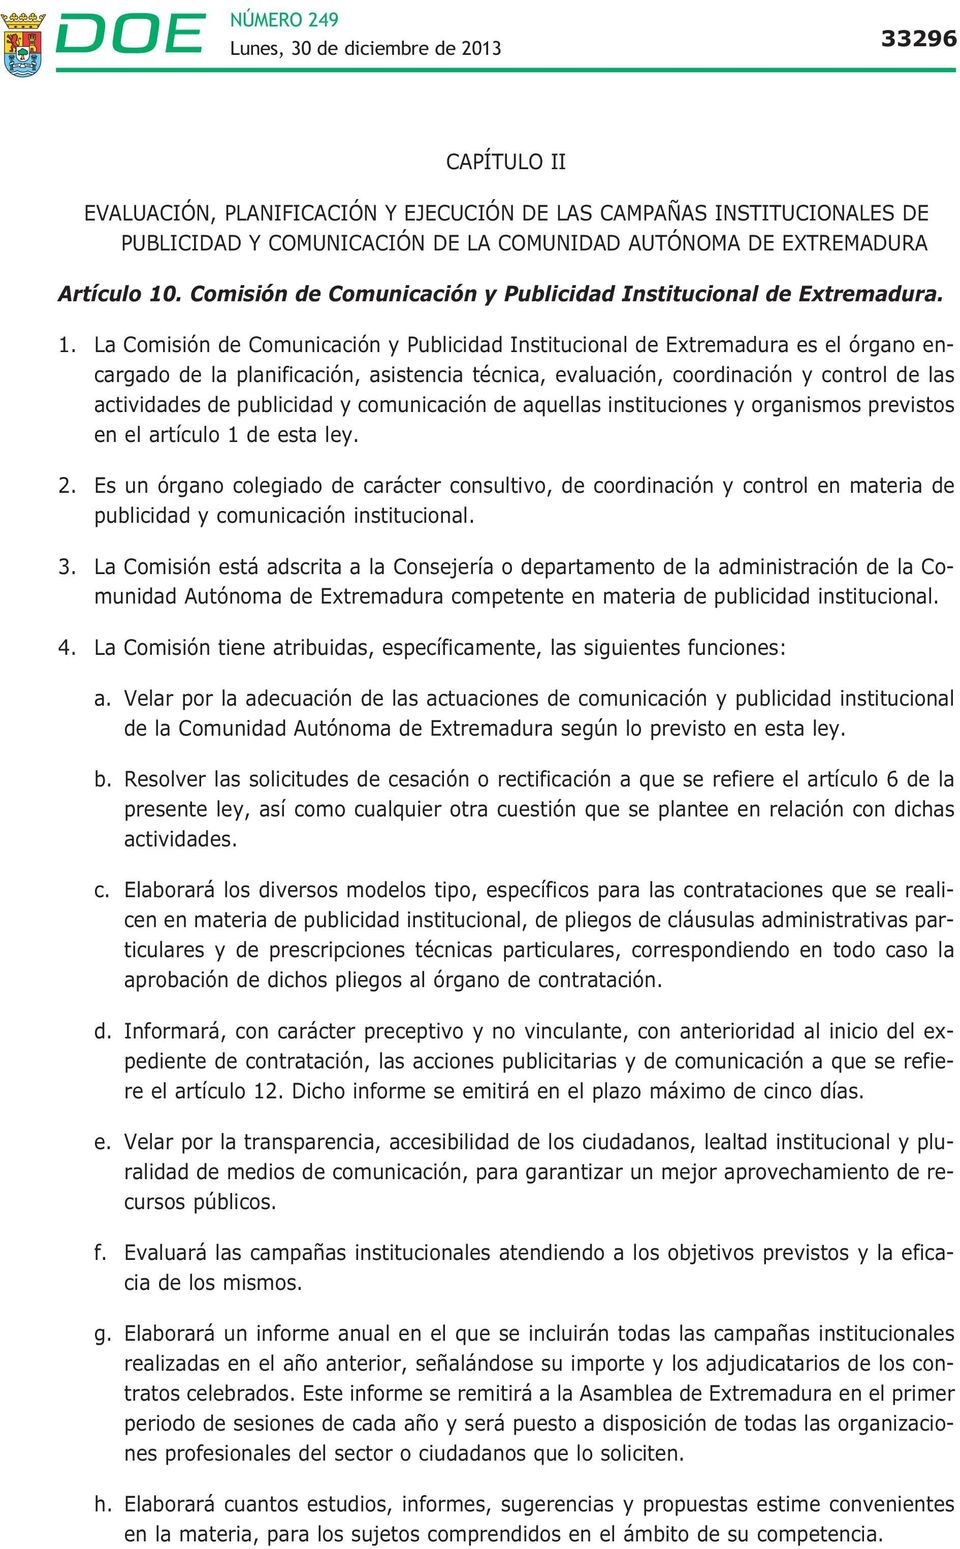 La Comisión de Comunicación y Publicidad Institucional de Extremadura es el órgano encargado de la planificación, asistencia técnica, evaluación, coordinación y control de las actividades de